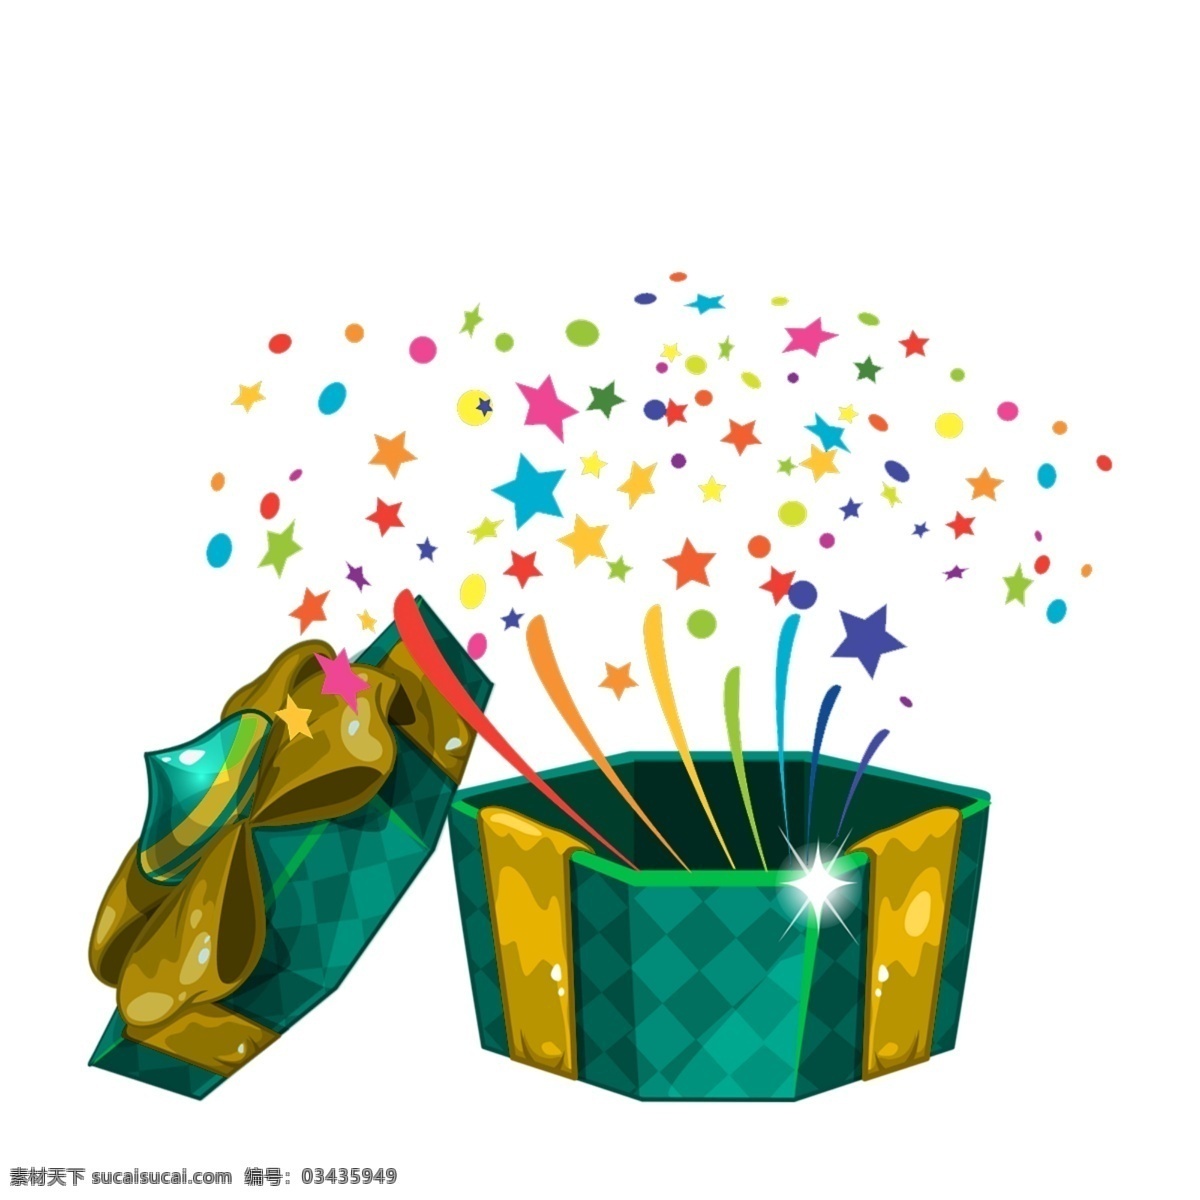 简单 卡通 礼品盒 图案 时尚 简约 礼品 派对 材料 颜色 庆典 可爱